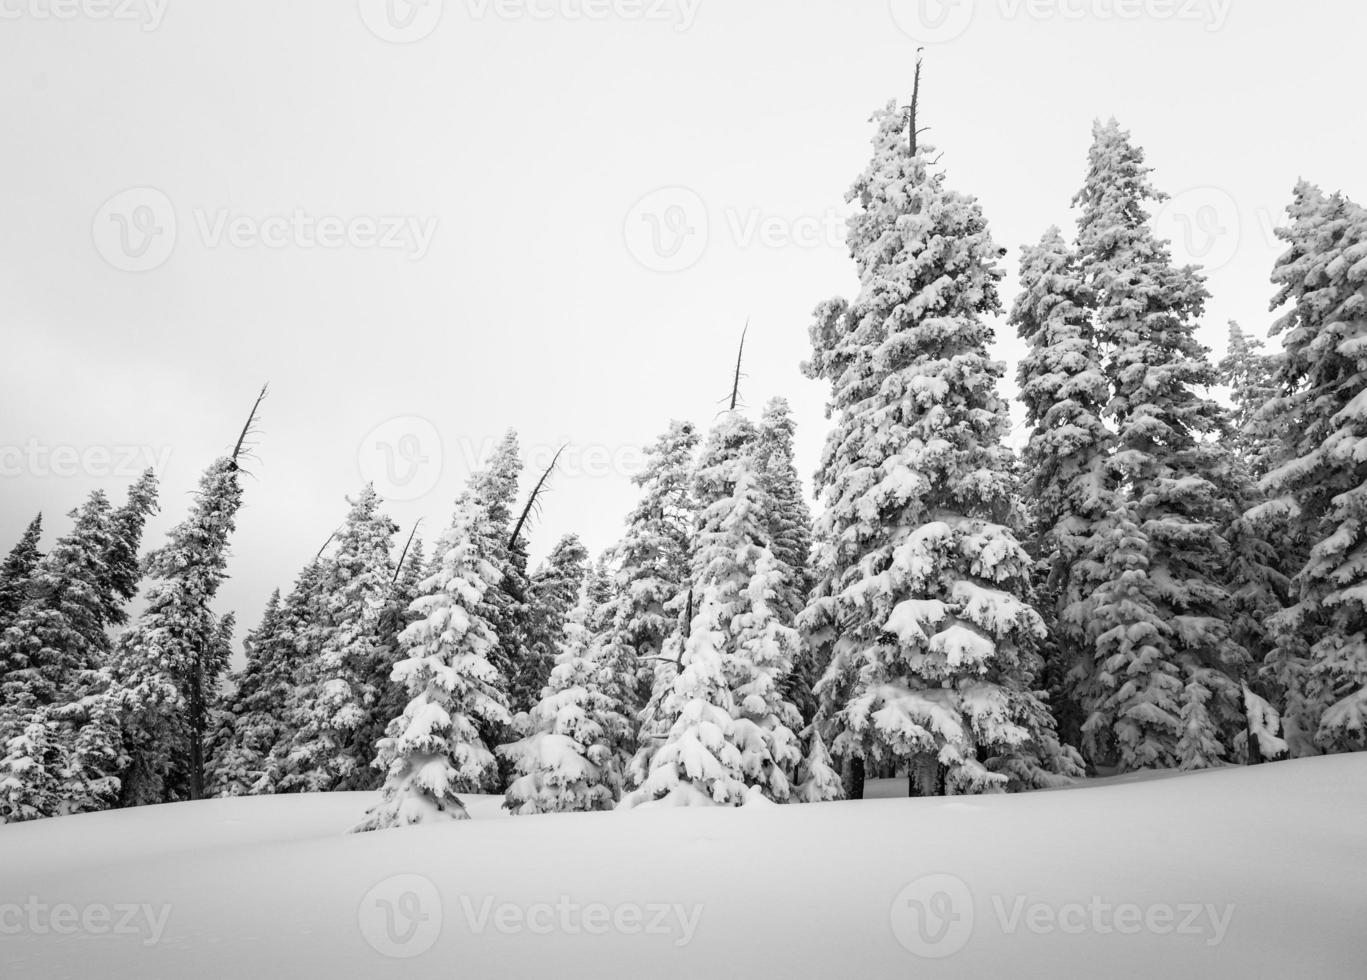 floresta de coníferas de inverno coberta pela neve fotografia p & b foto